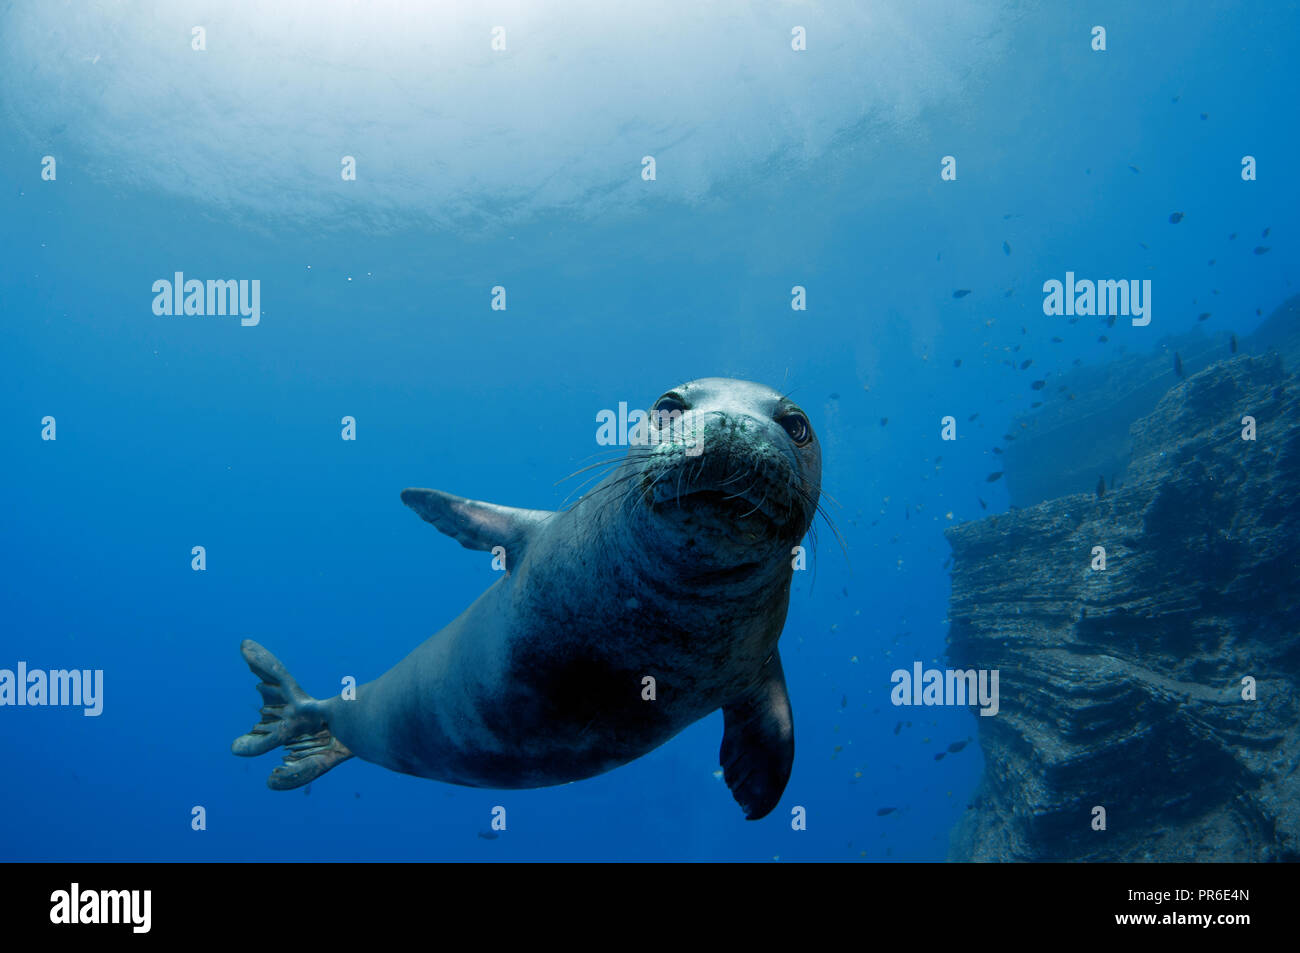 Hawaiian monk seal, Neomonachus schauinslandi, endangered species, Lehua Island, Niihau, Hawaii, USA Stock Photo